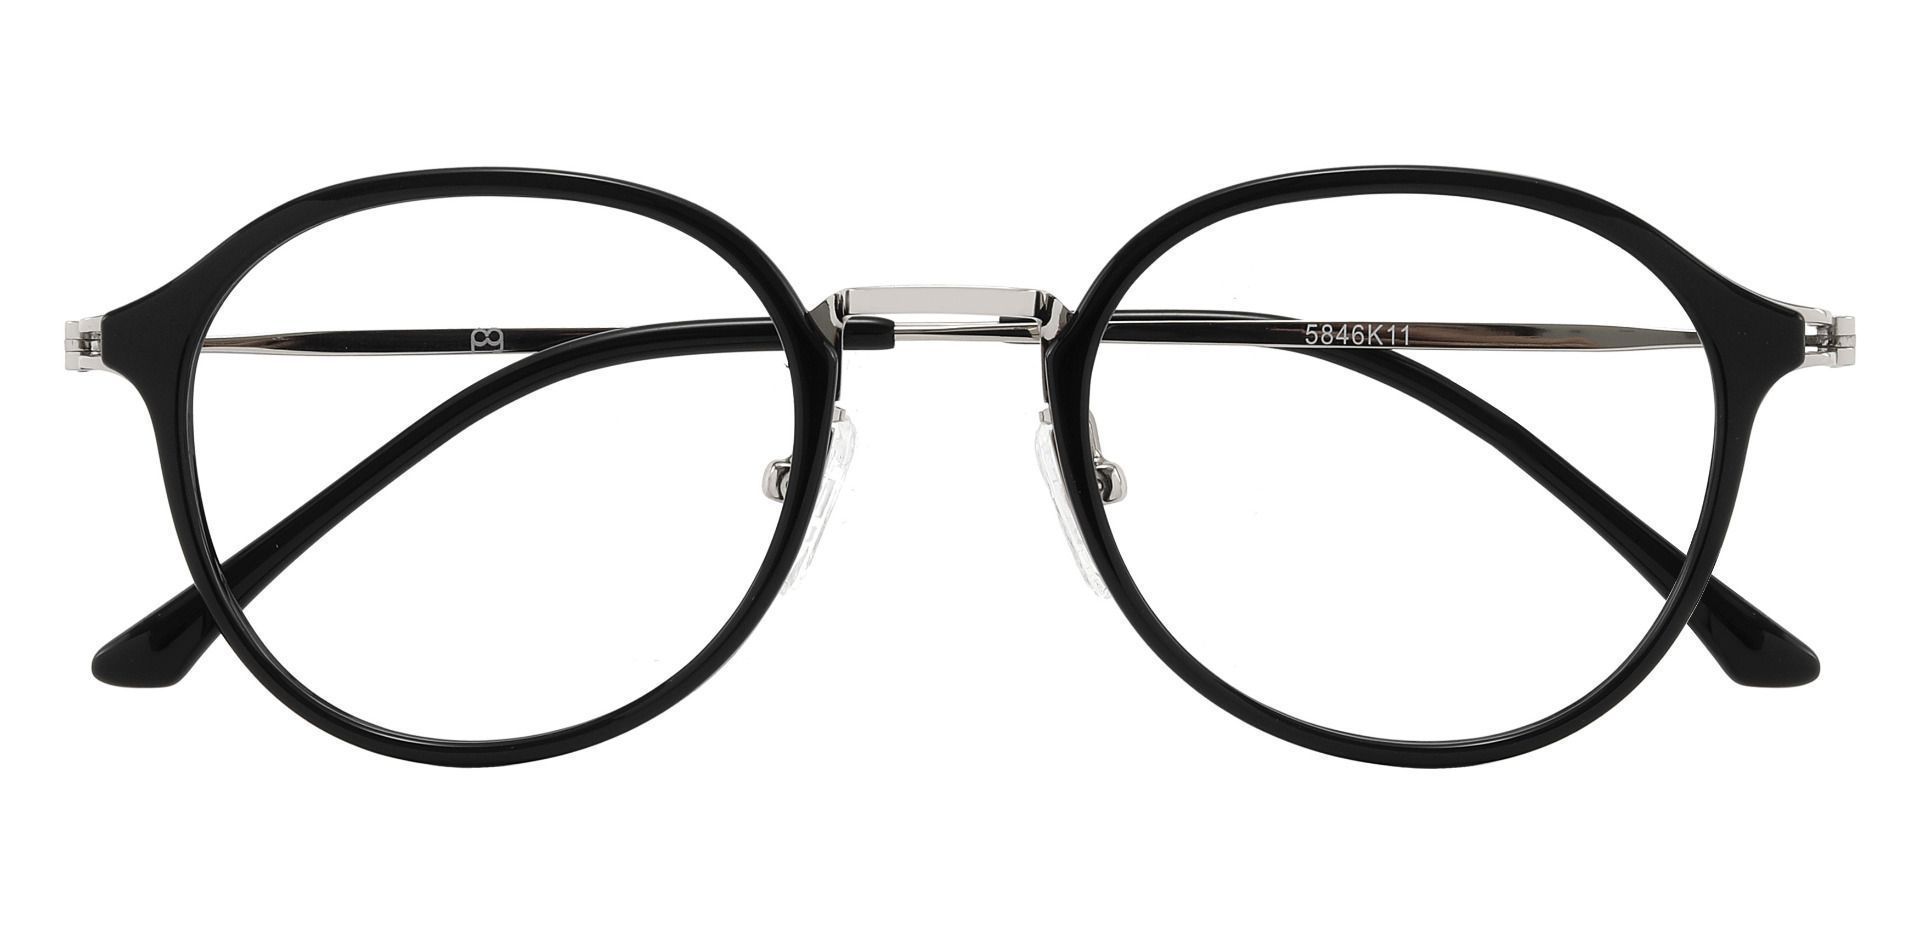 Billings Round Non-Rx Glasses - Black